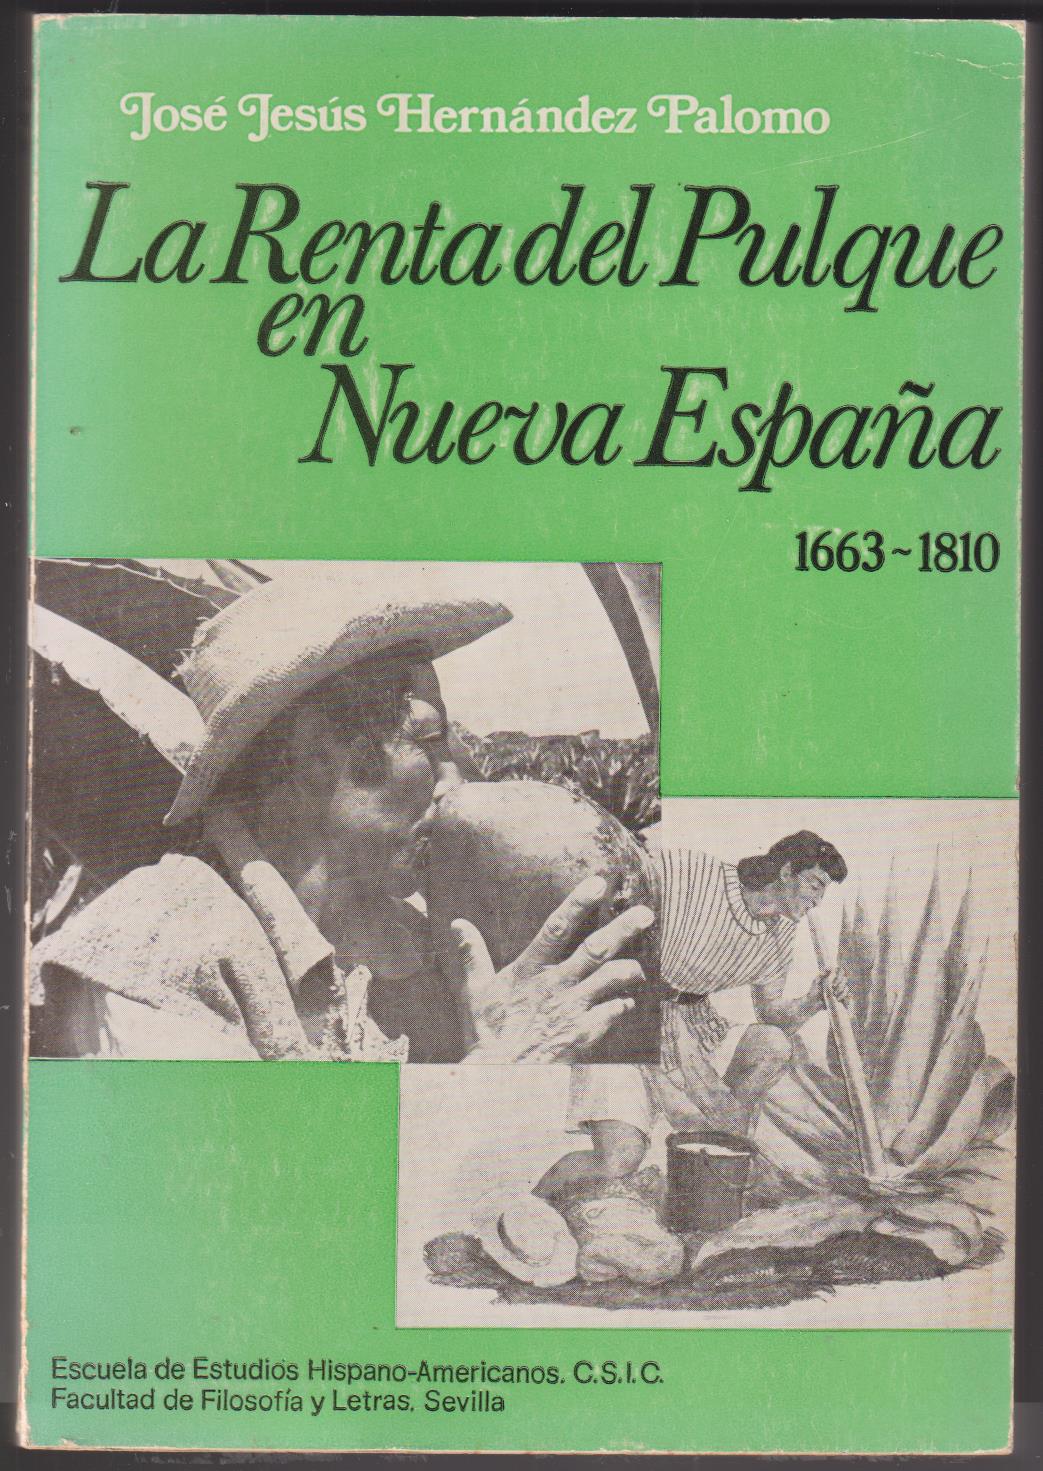 La Renta del Pulque en Nueva España 1663 - 1810. José Jesús Hernández Palomo